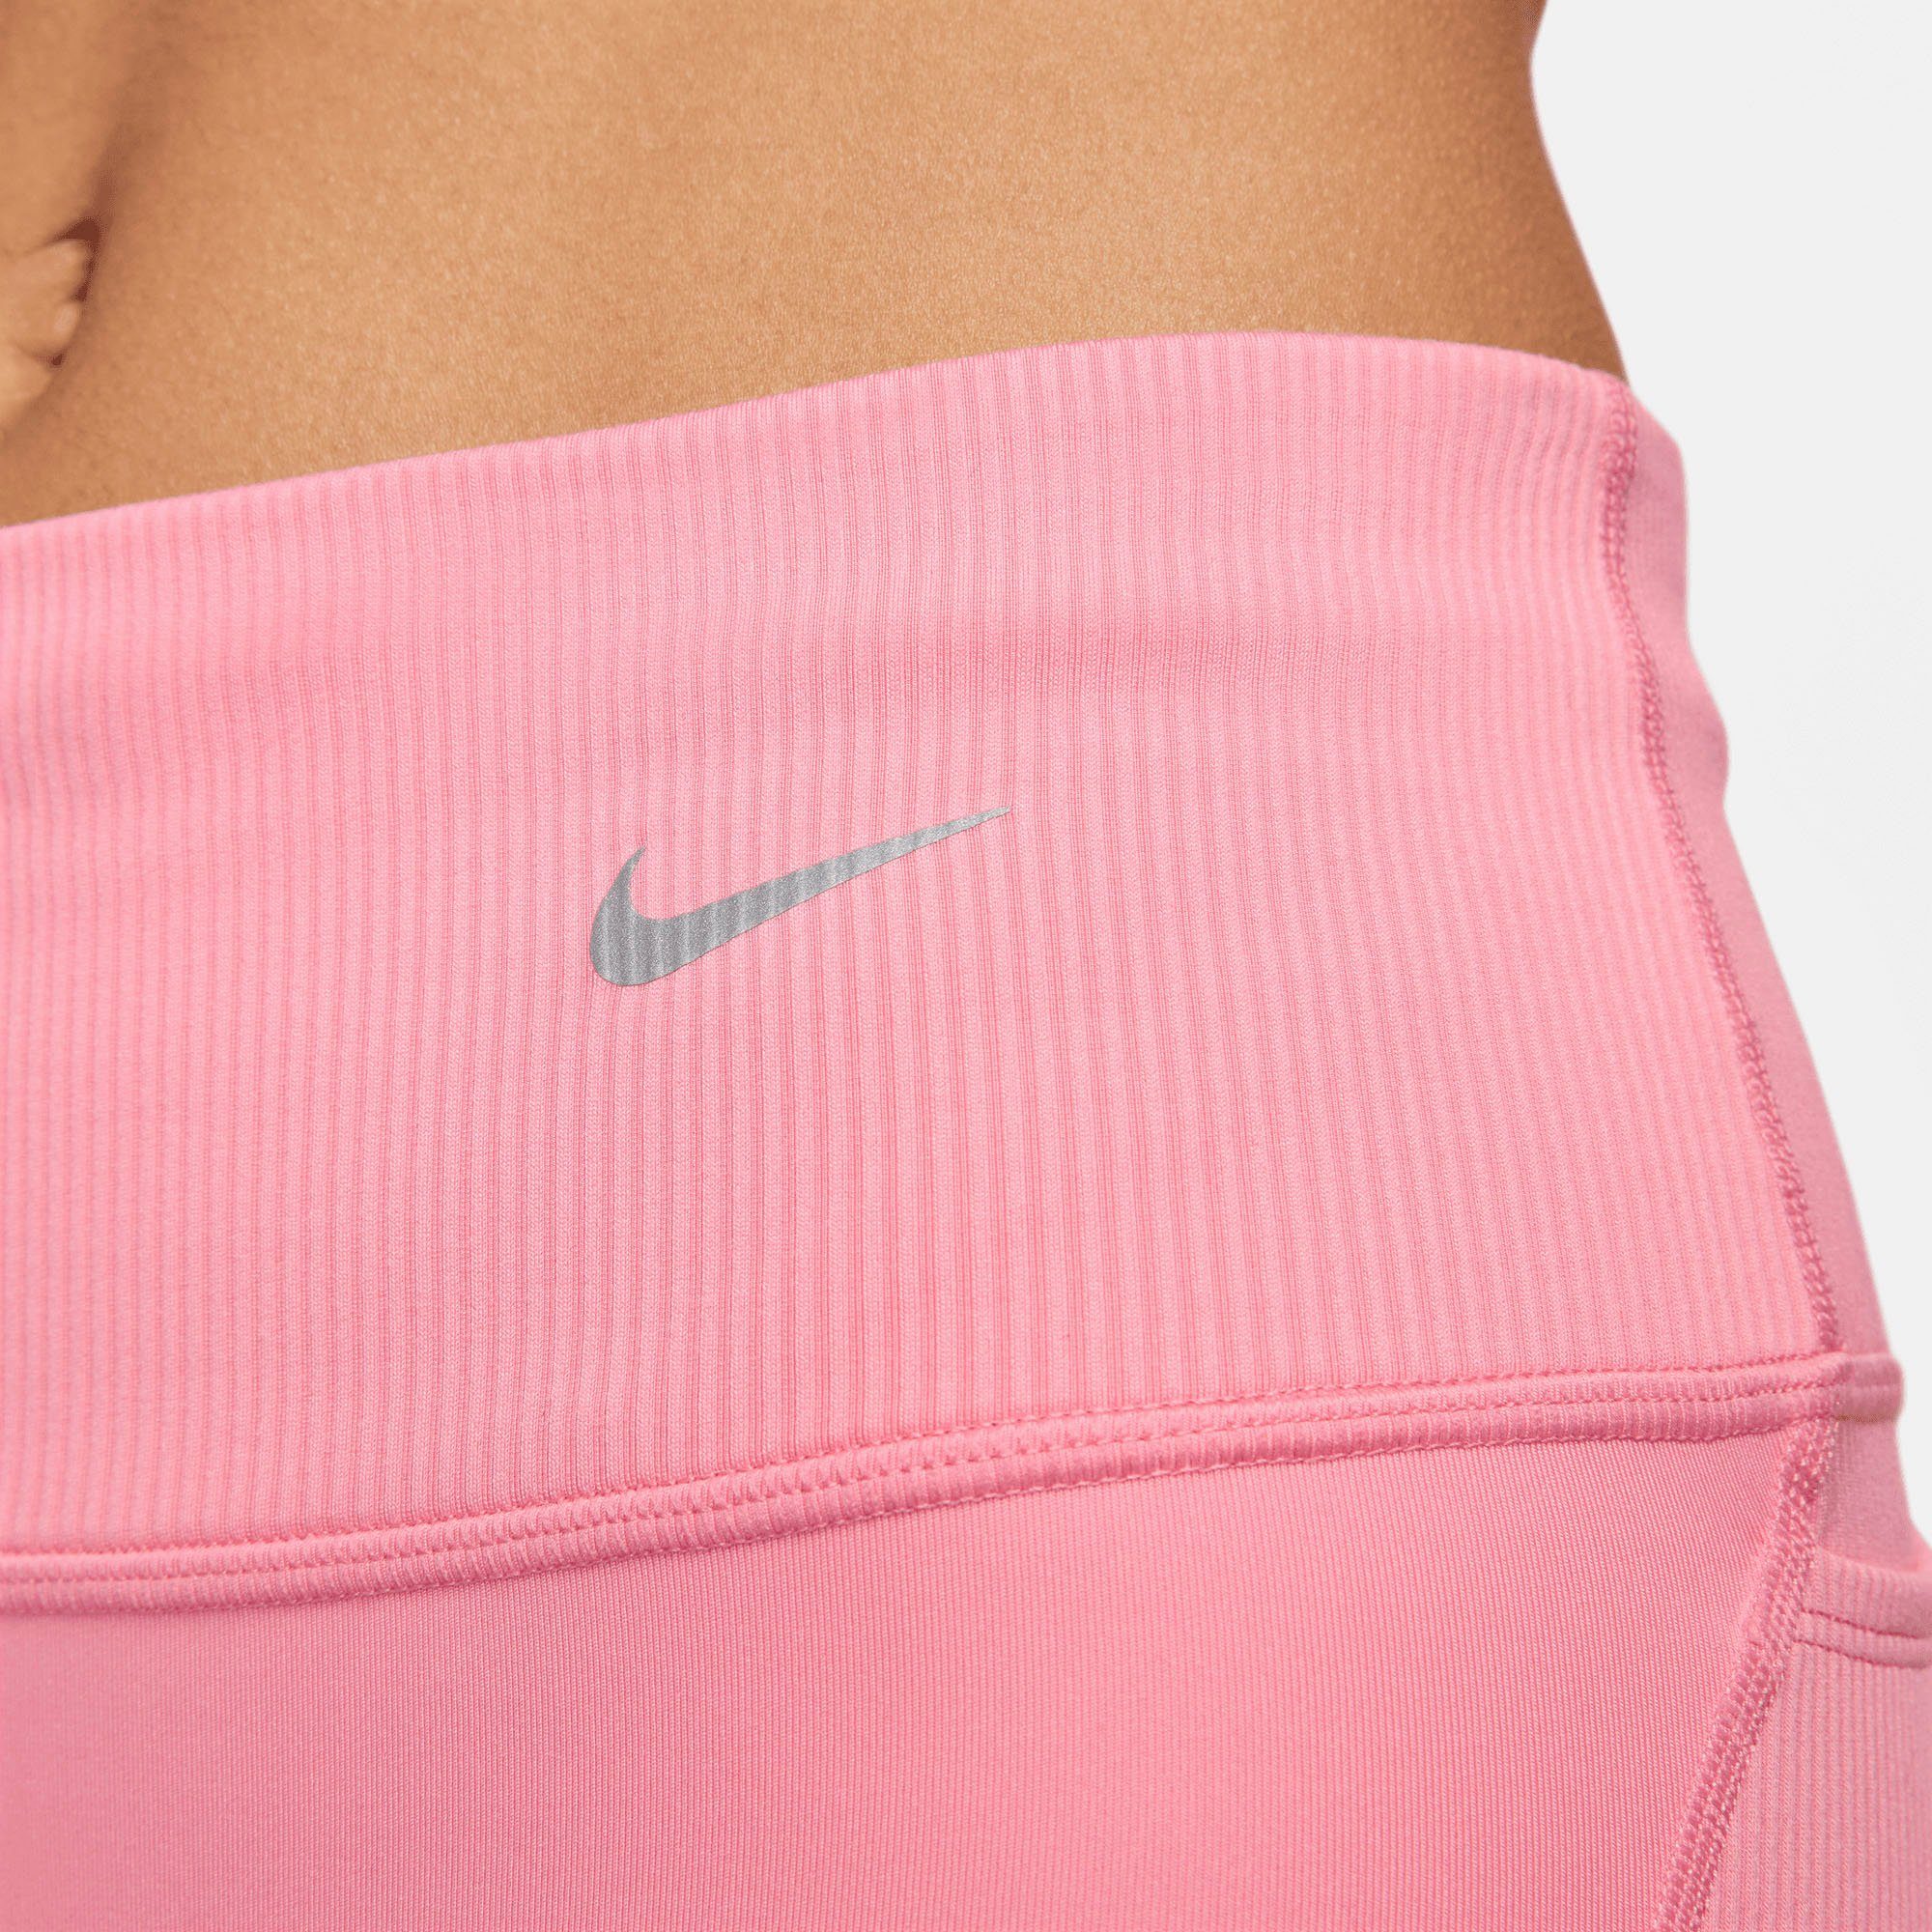 Dri-FIT Shorts Lauftights Women's Nike rot